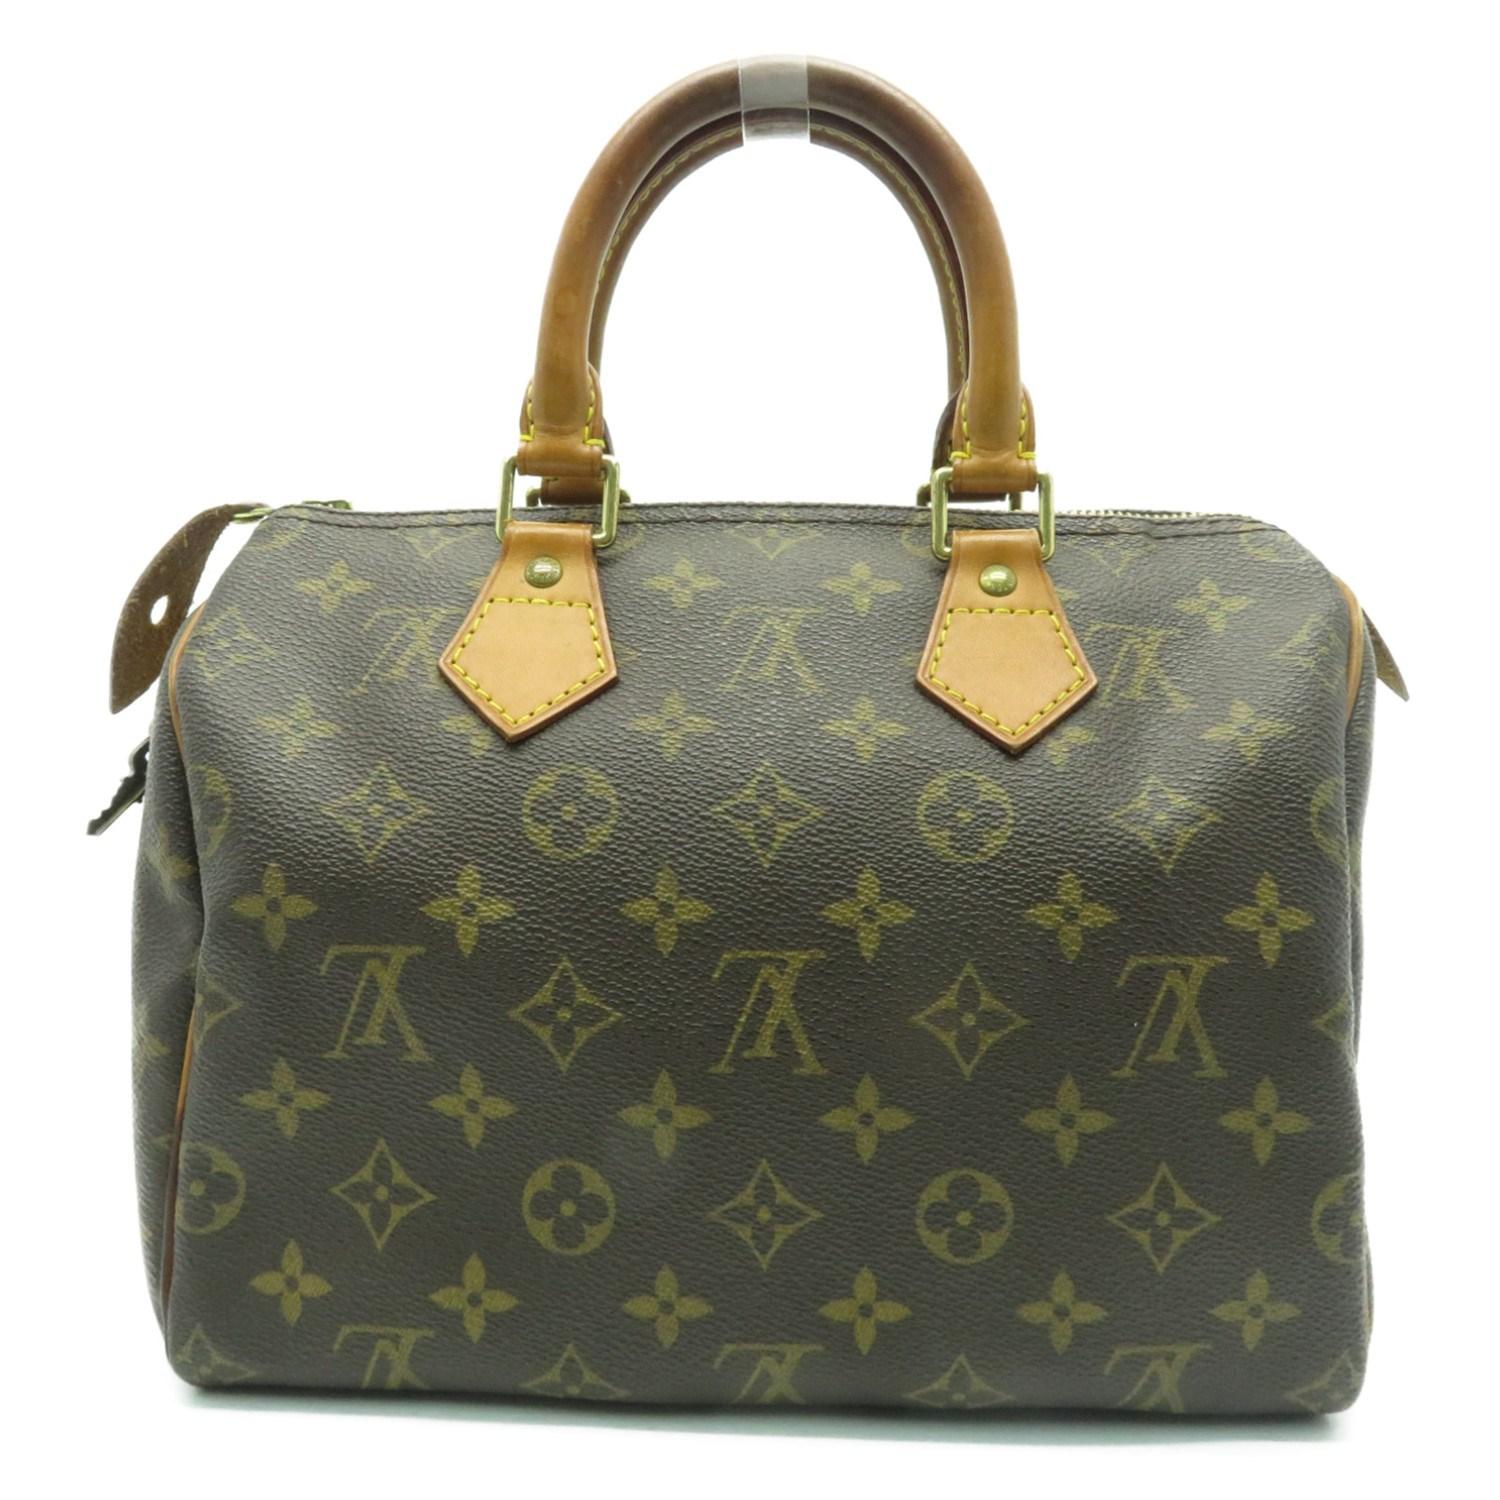 Louis Vuitton Lv Speedy 25 Hand Bag M41528 Monogram Brown 2035 in Brown - Lyst